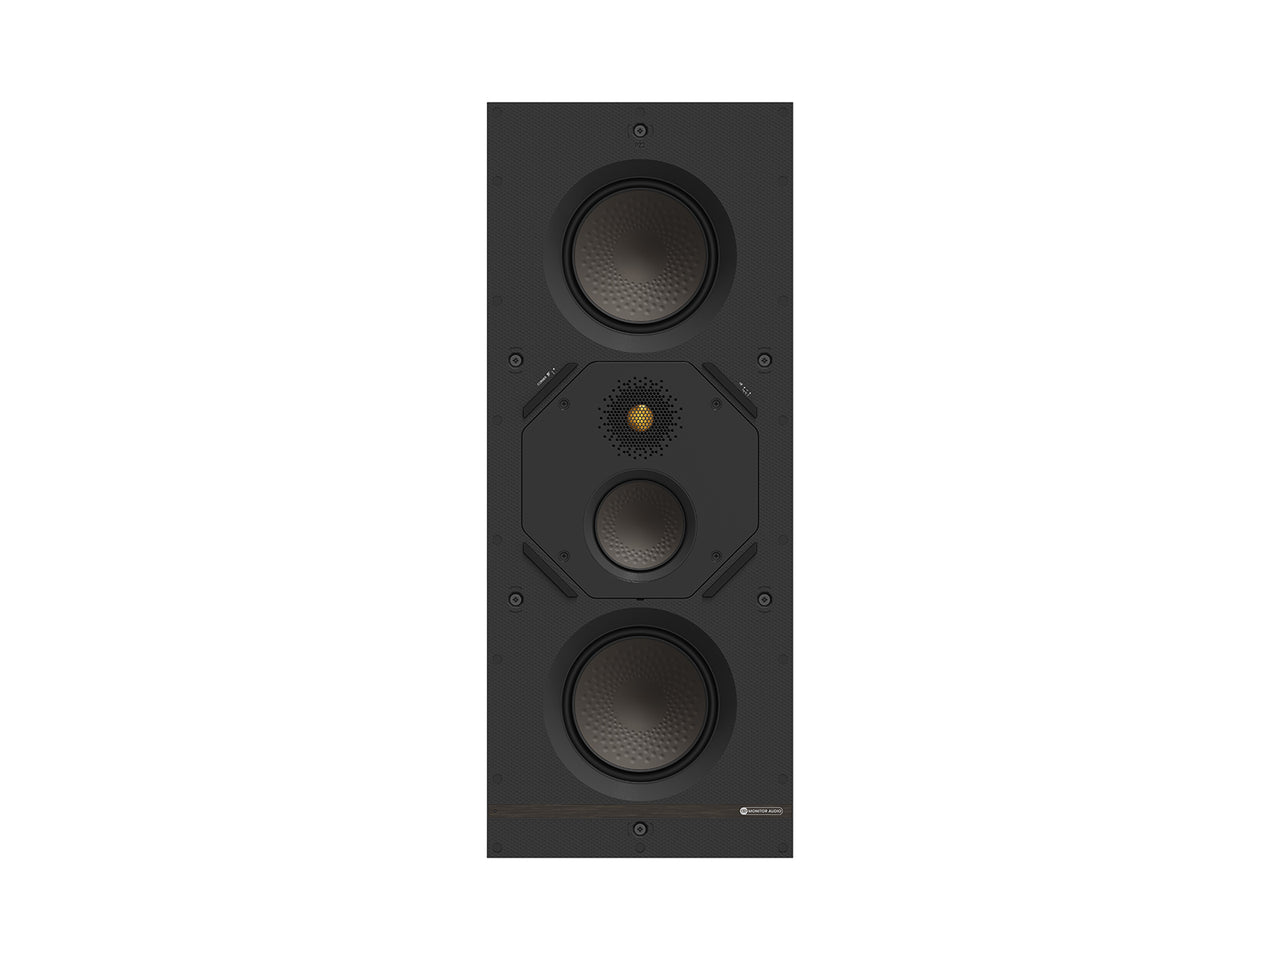 Monitor Audio Creator Series Tier 2 In-Wall Speakers (Each)